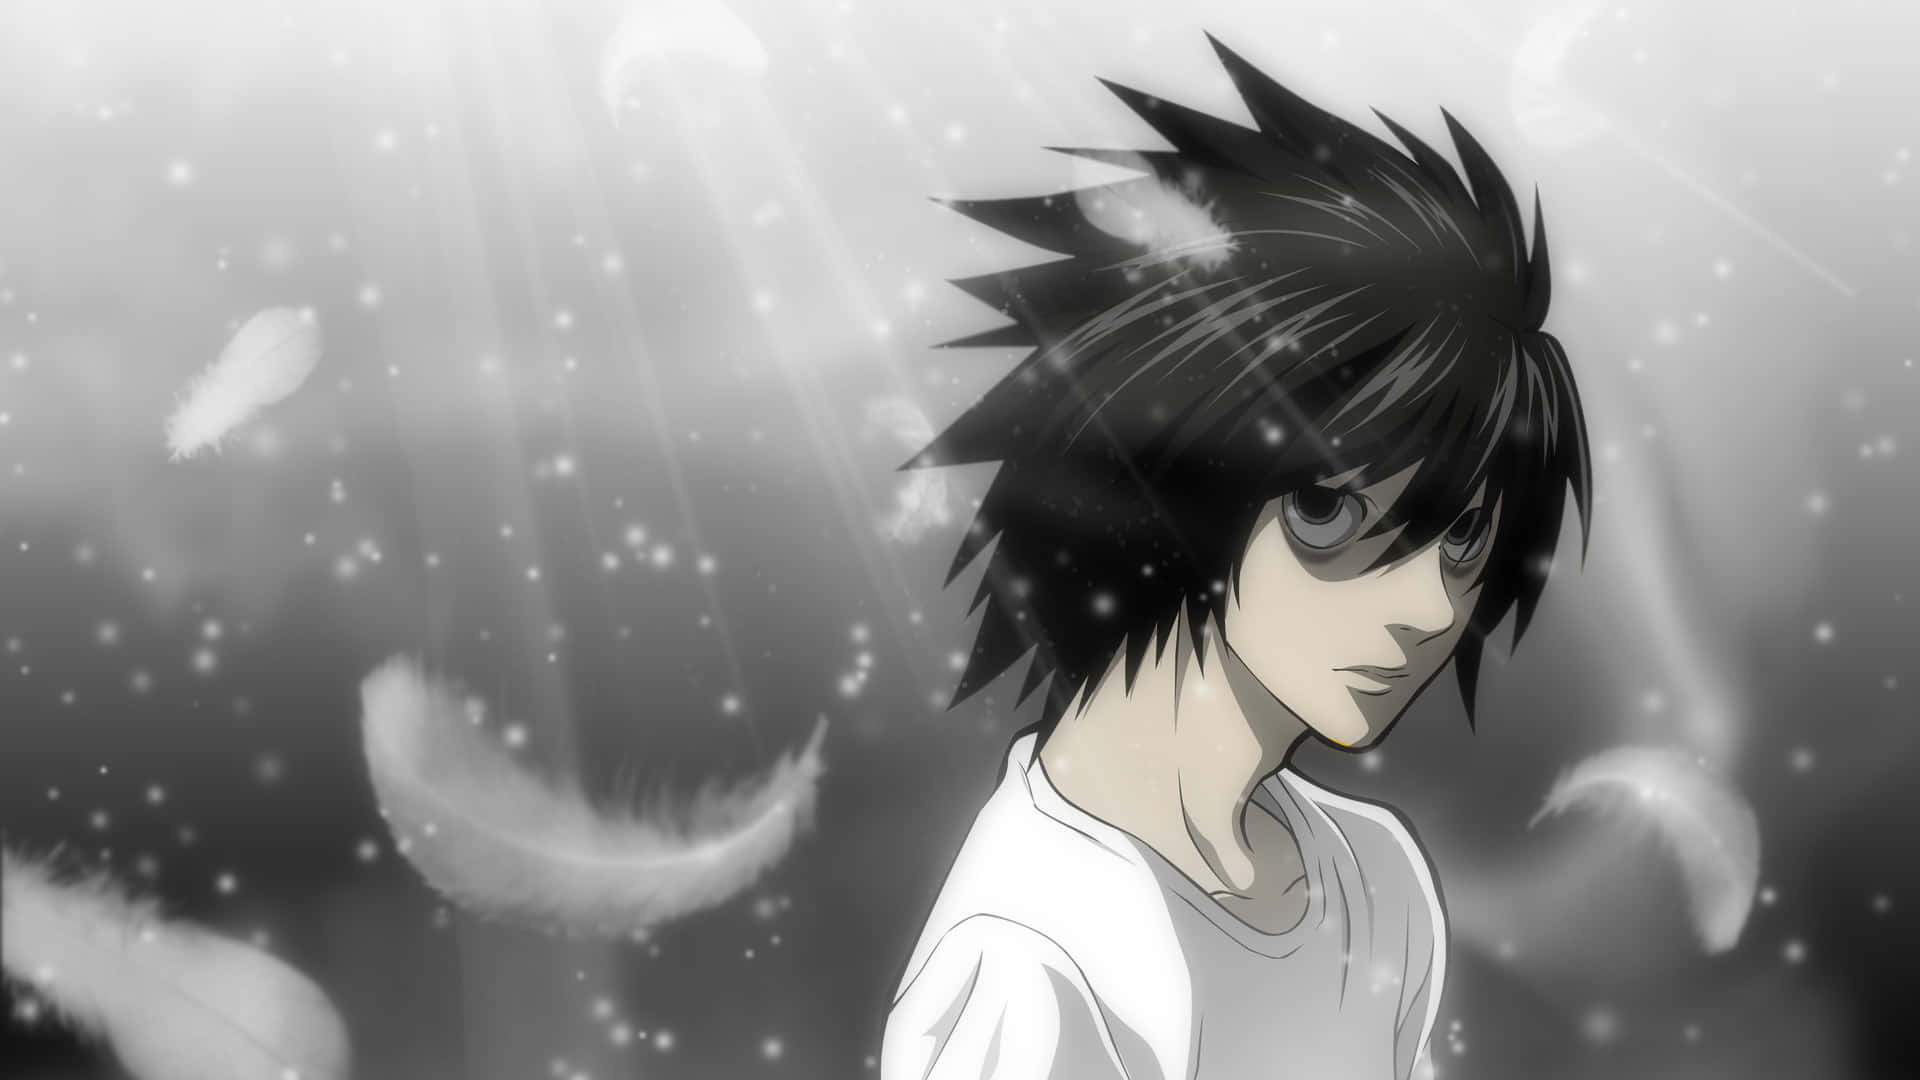 Lightyagami Är Huvudpersonen I Mangaserien Och Animeserien Death Note.